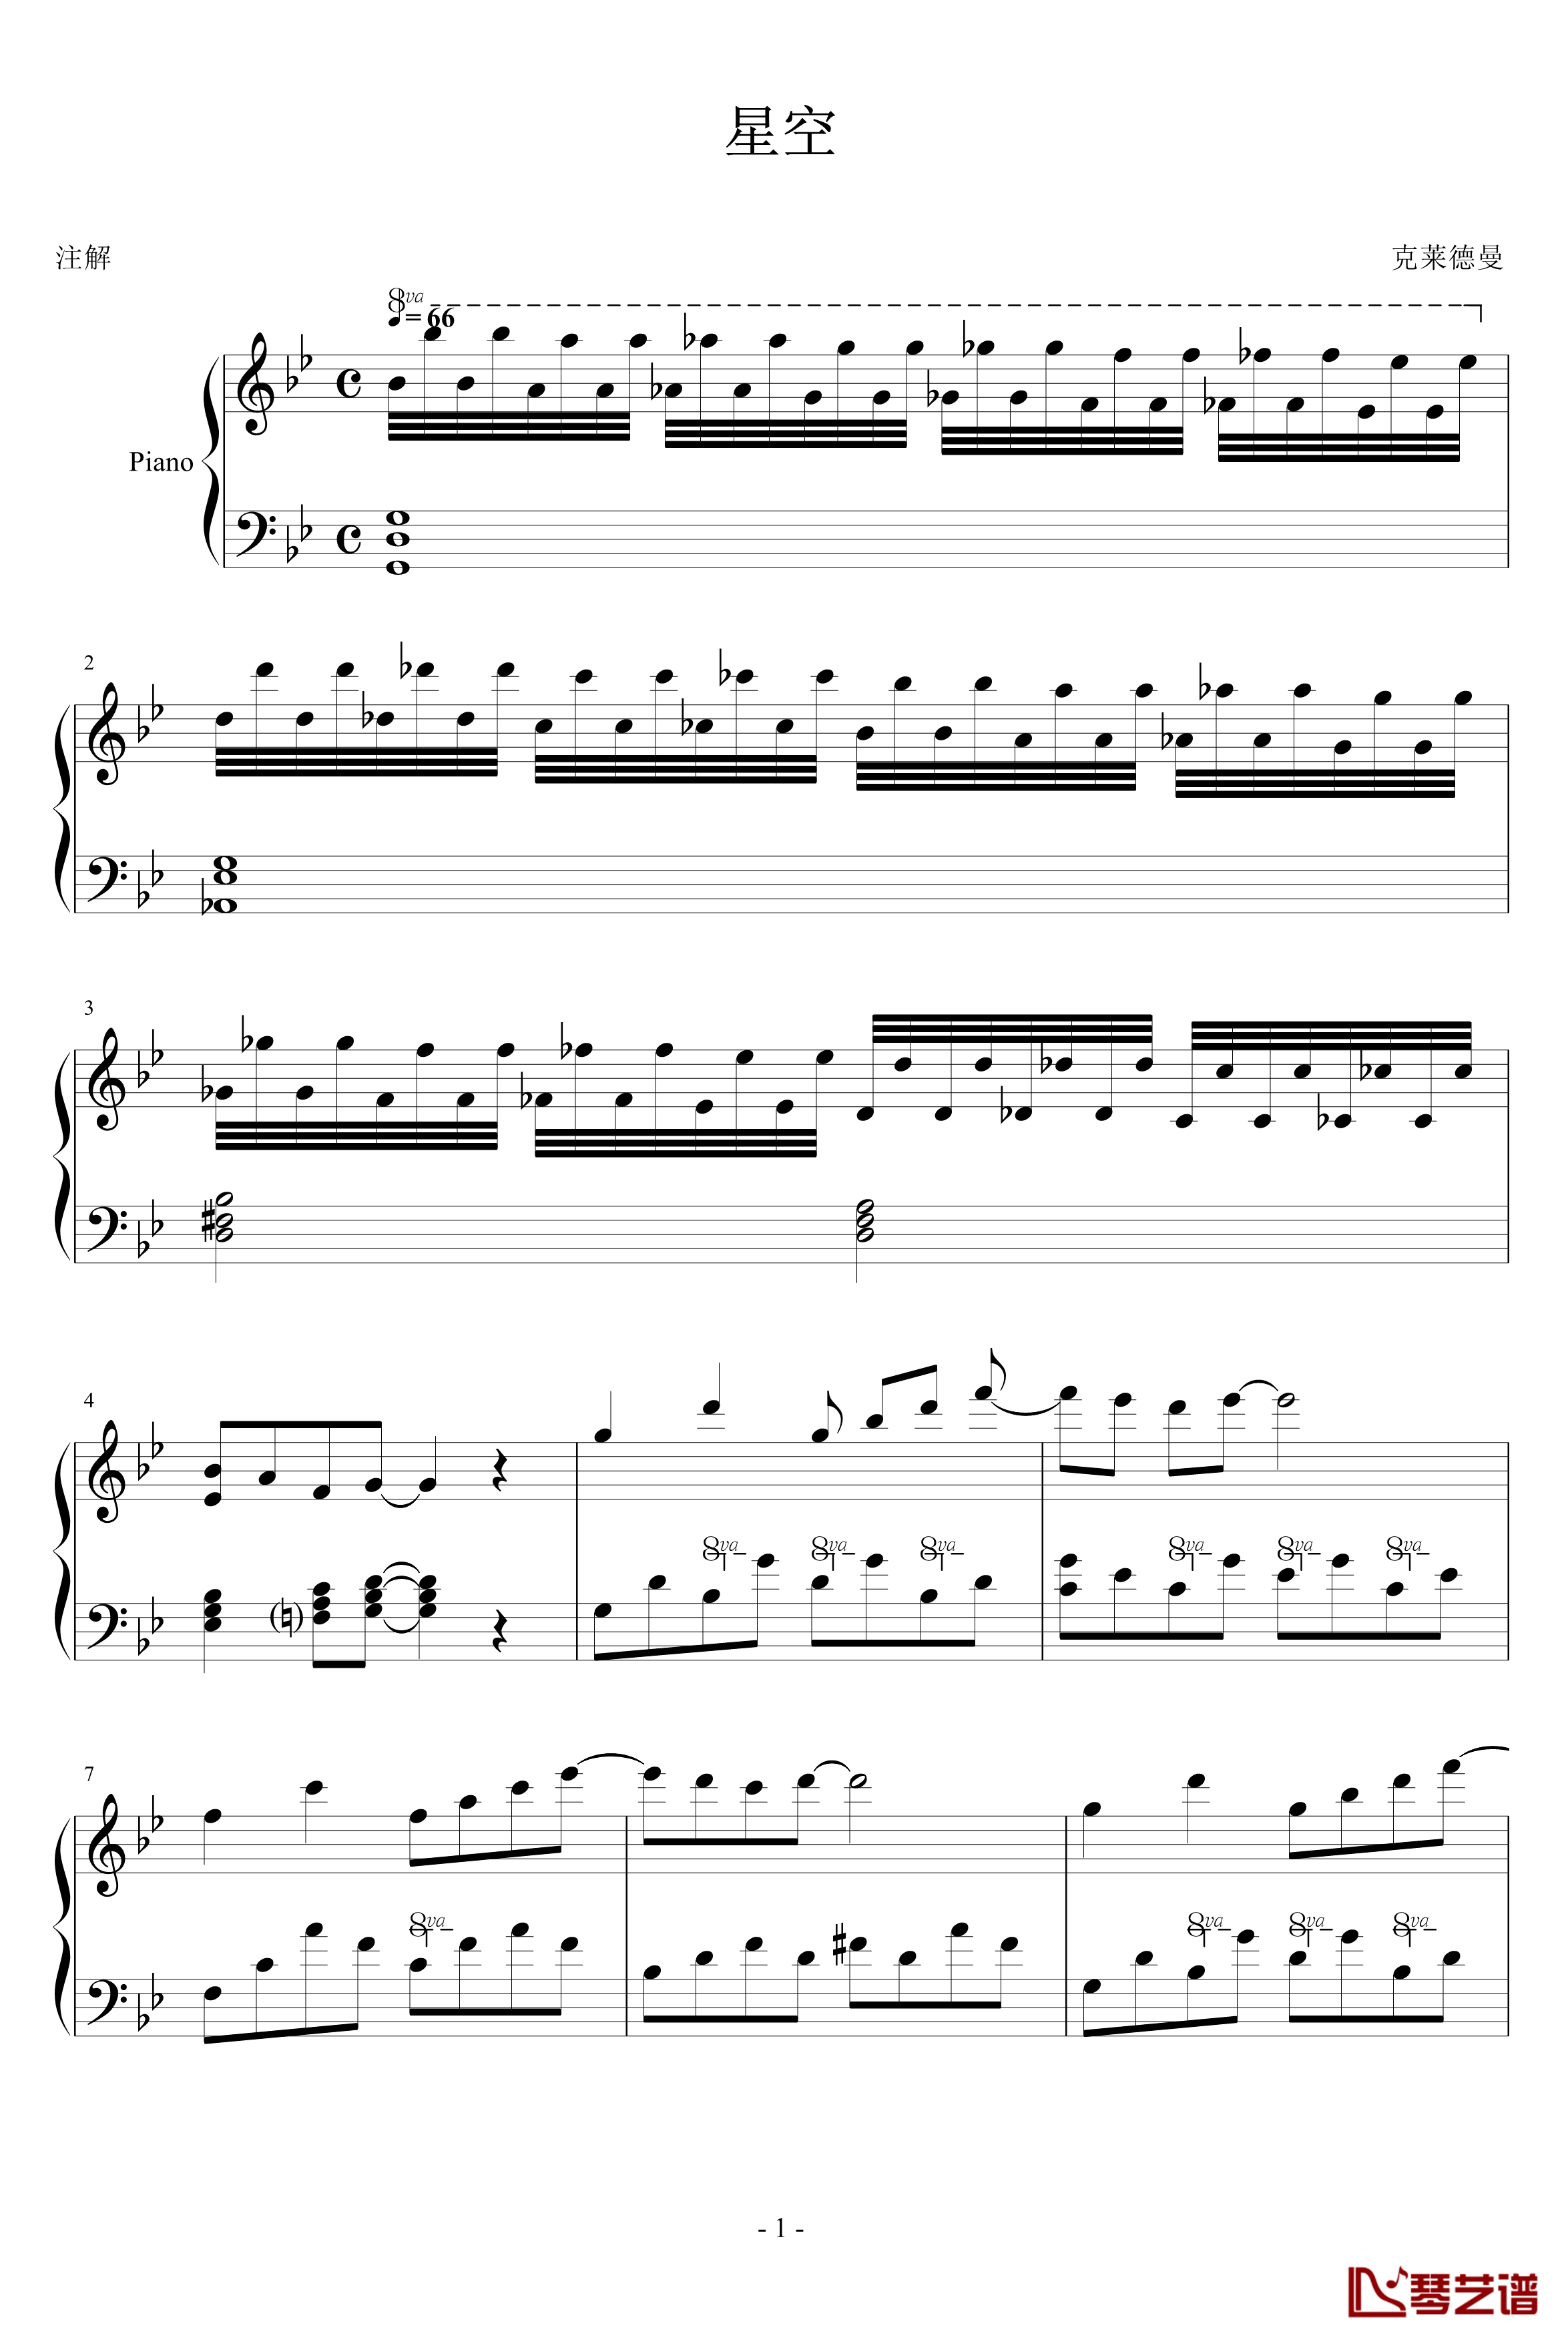 星空钢琴谱-简化版-克莱德曼